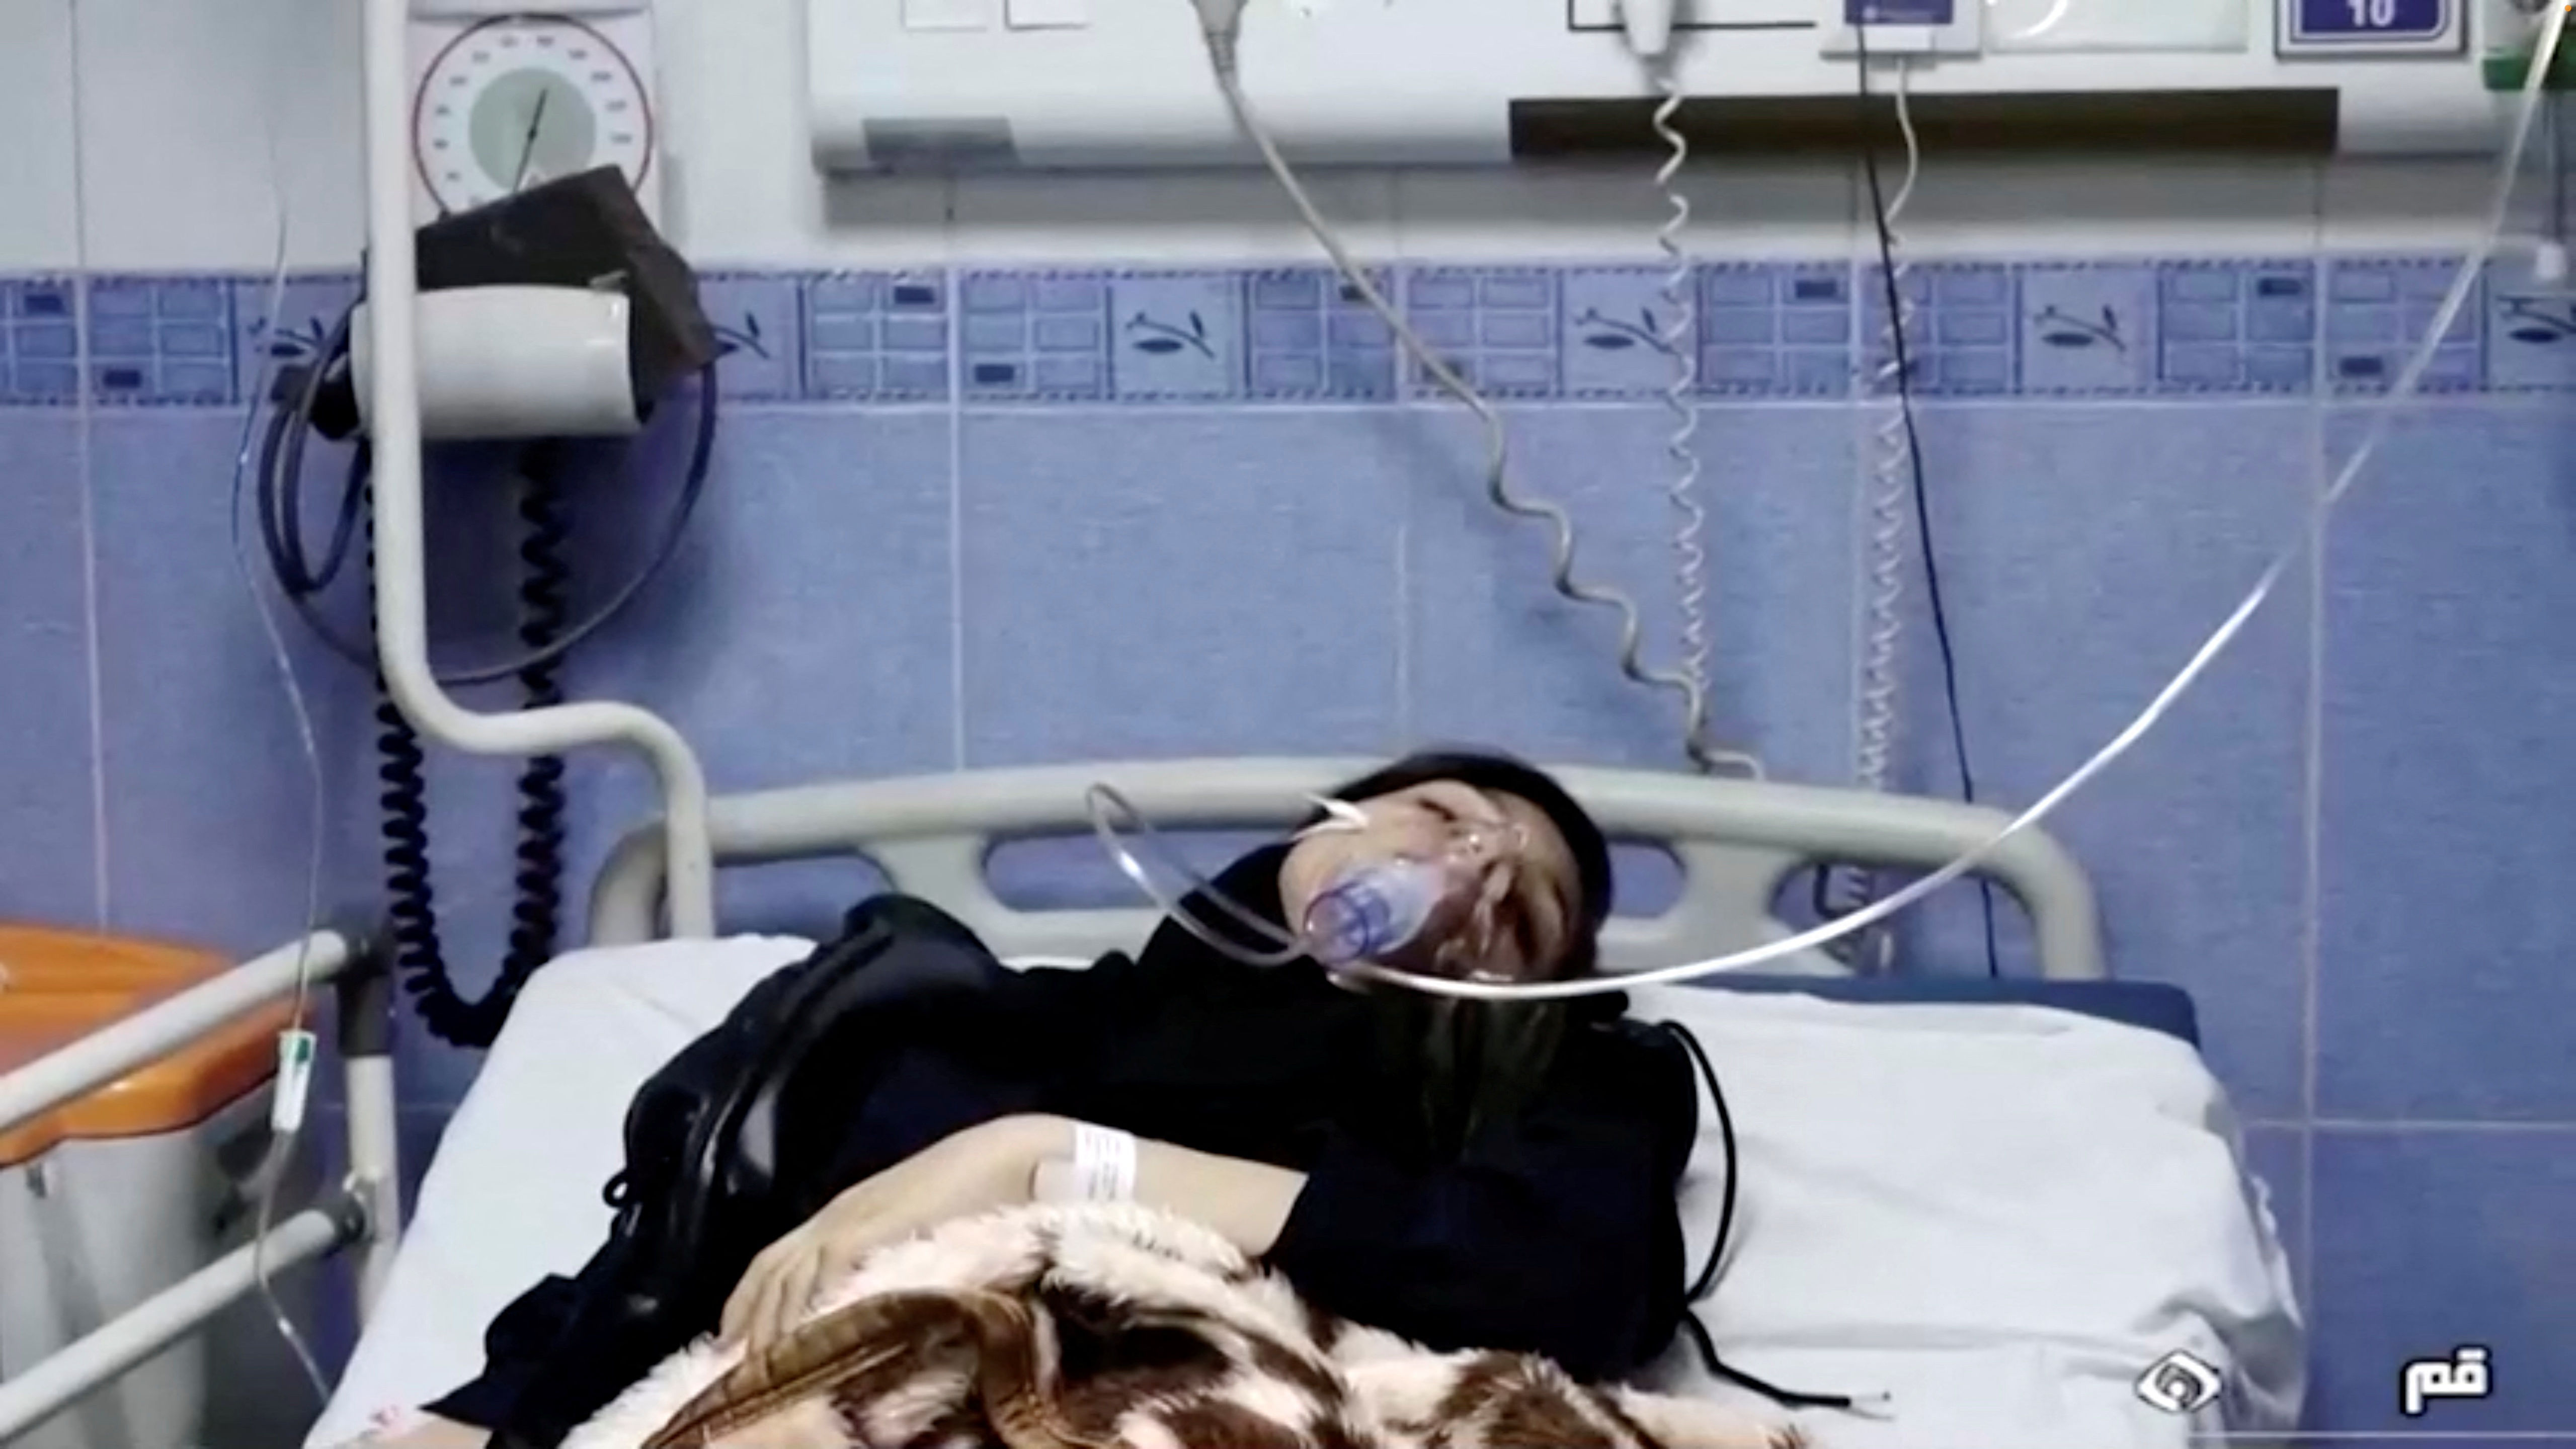 Continúan los envenenamientos en colegios de mujeres en Irán: cientos de niñas fueron hospitalizadas con síntomas de intoxicación